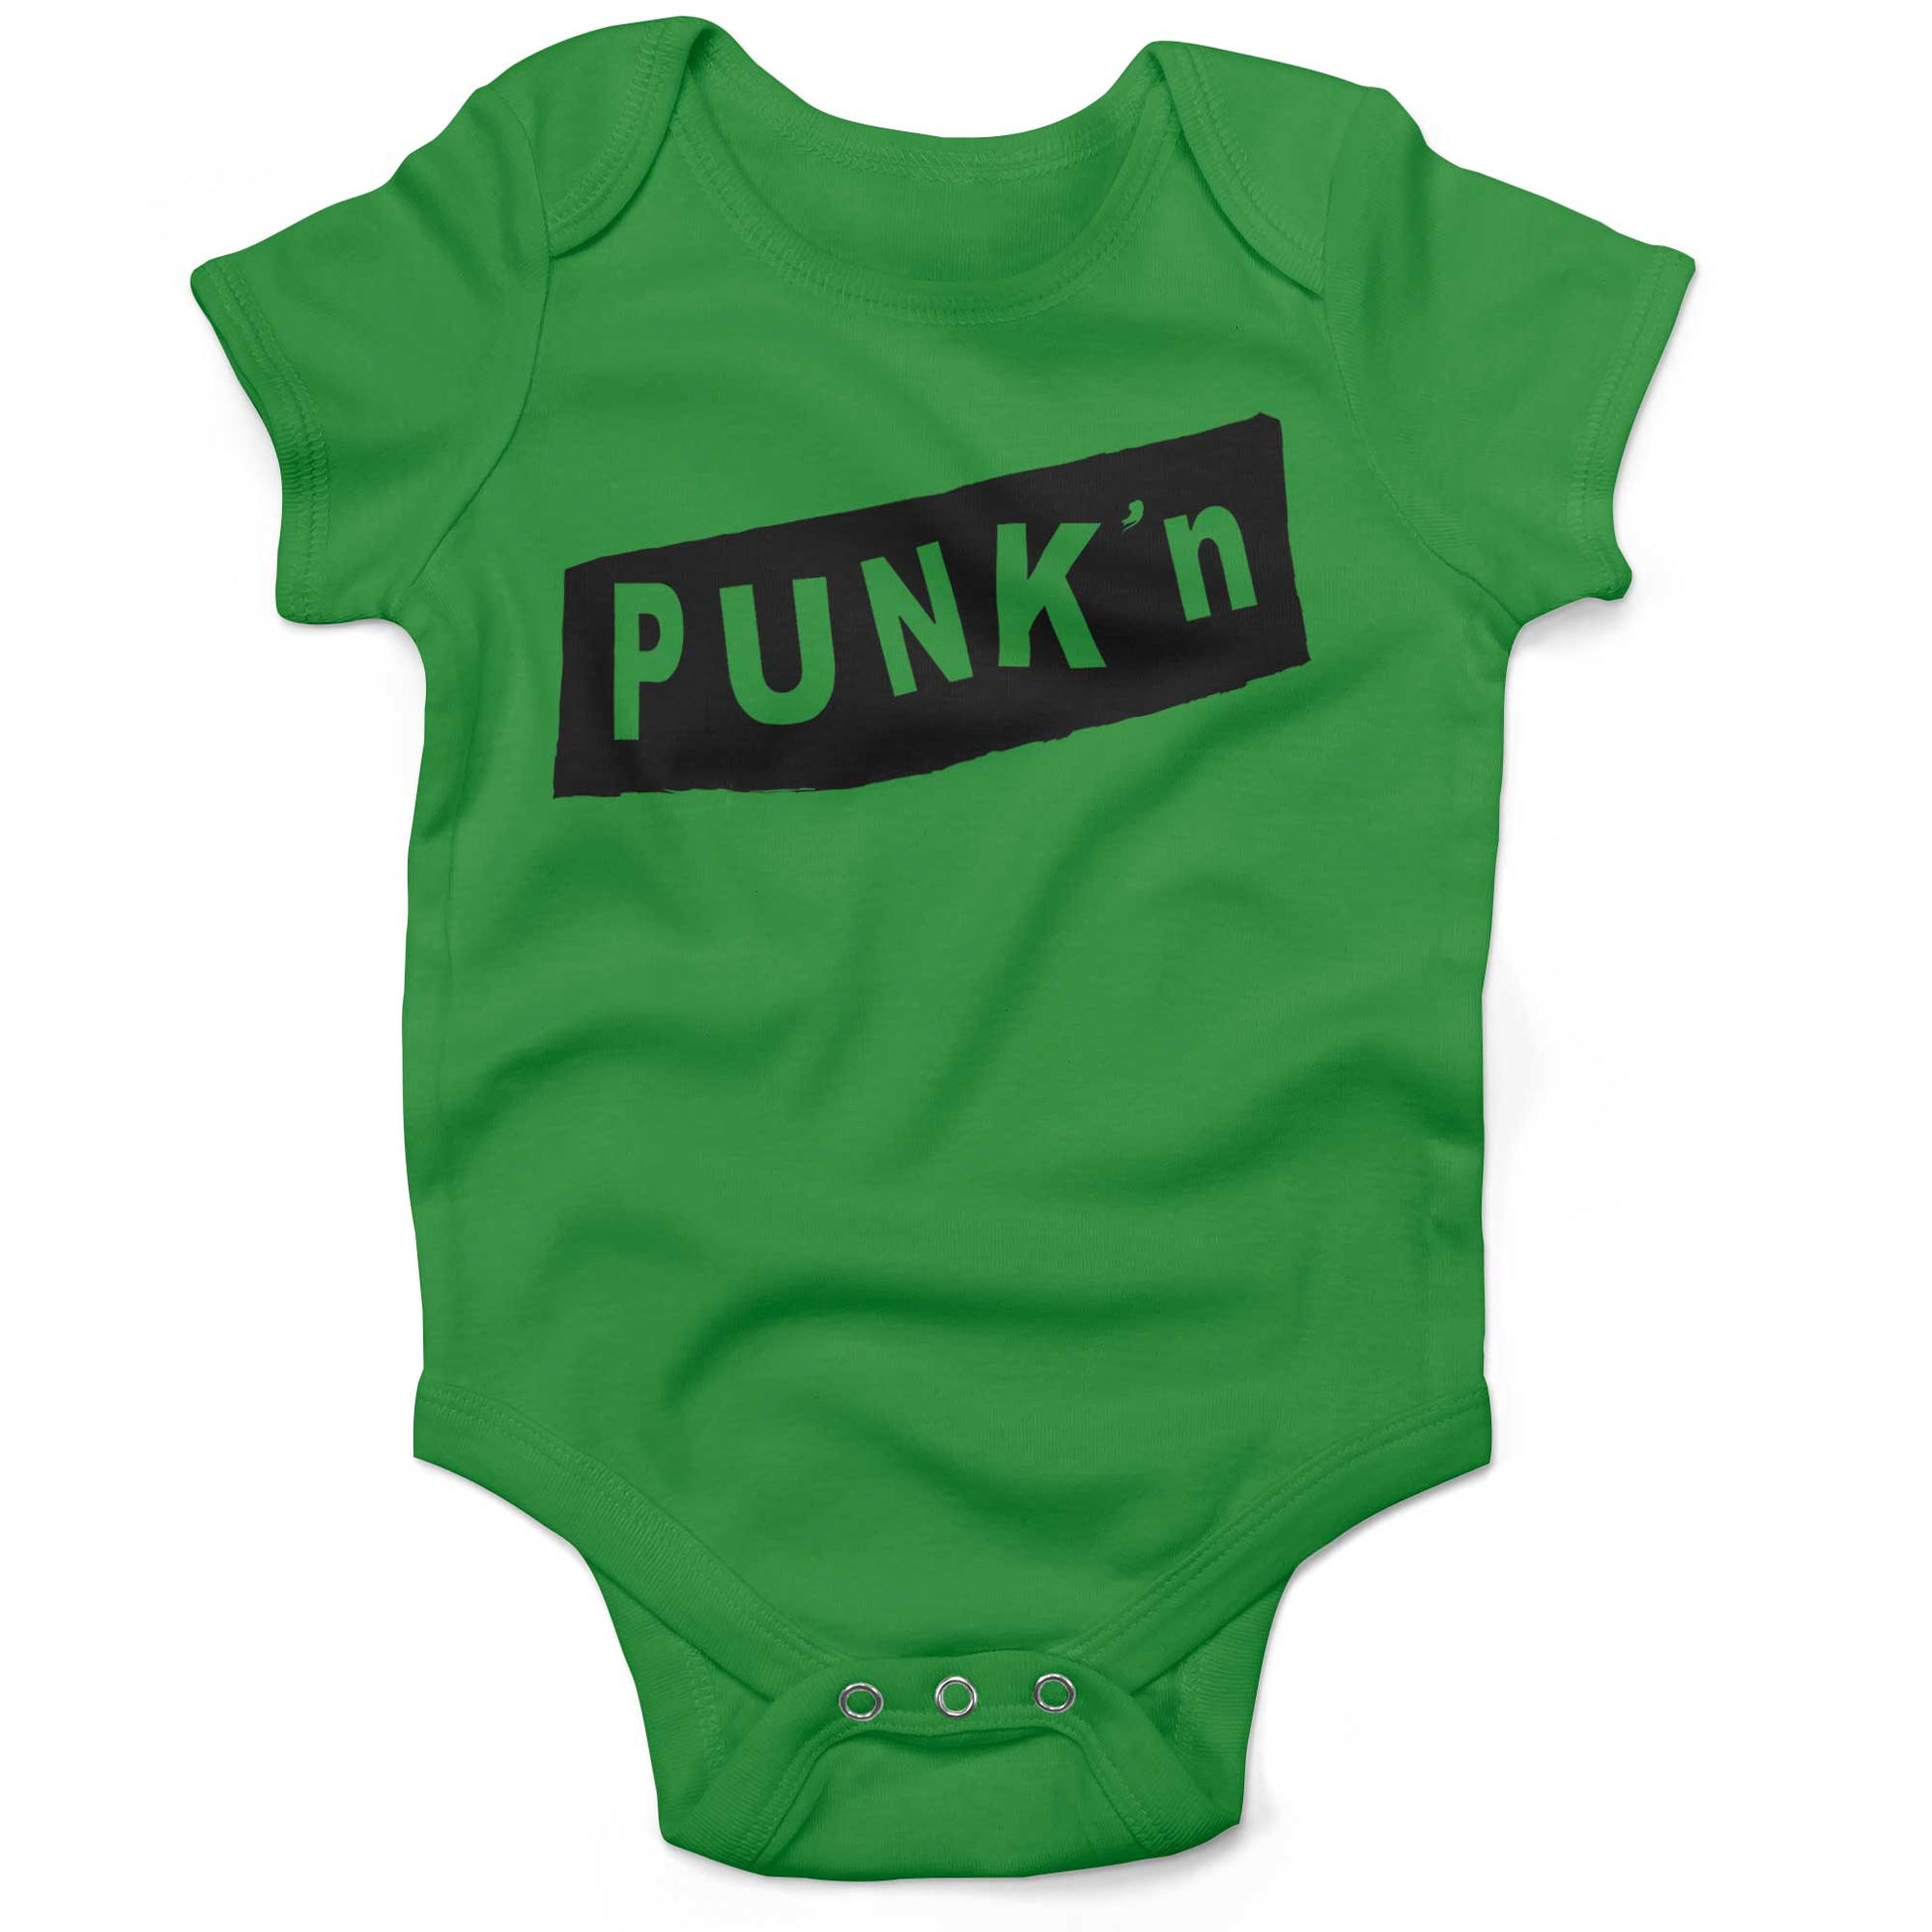 Pumpkin Punk'n Infant Bodysuit or Raglan Tee-Grass Green-3-6 months